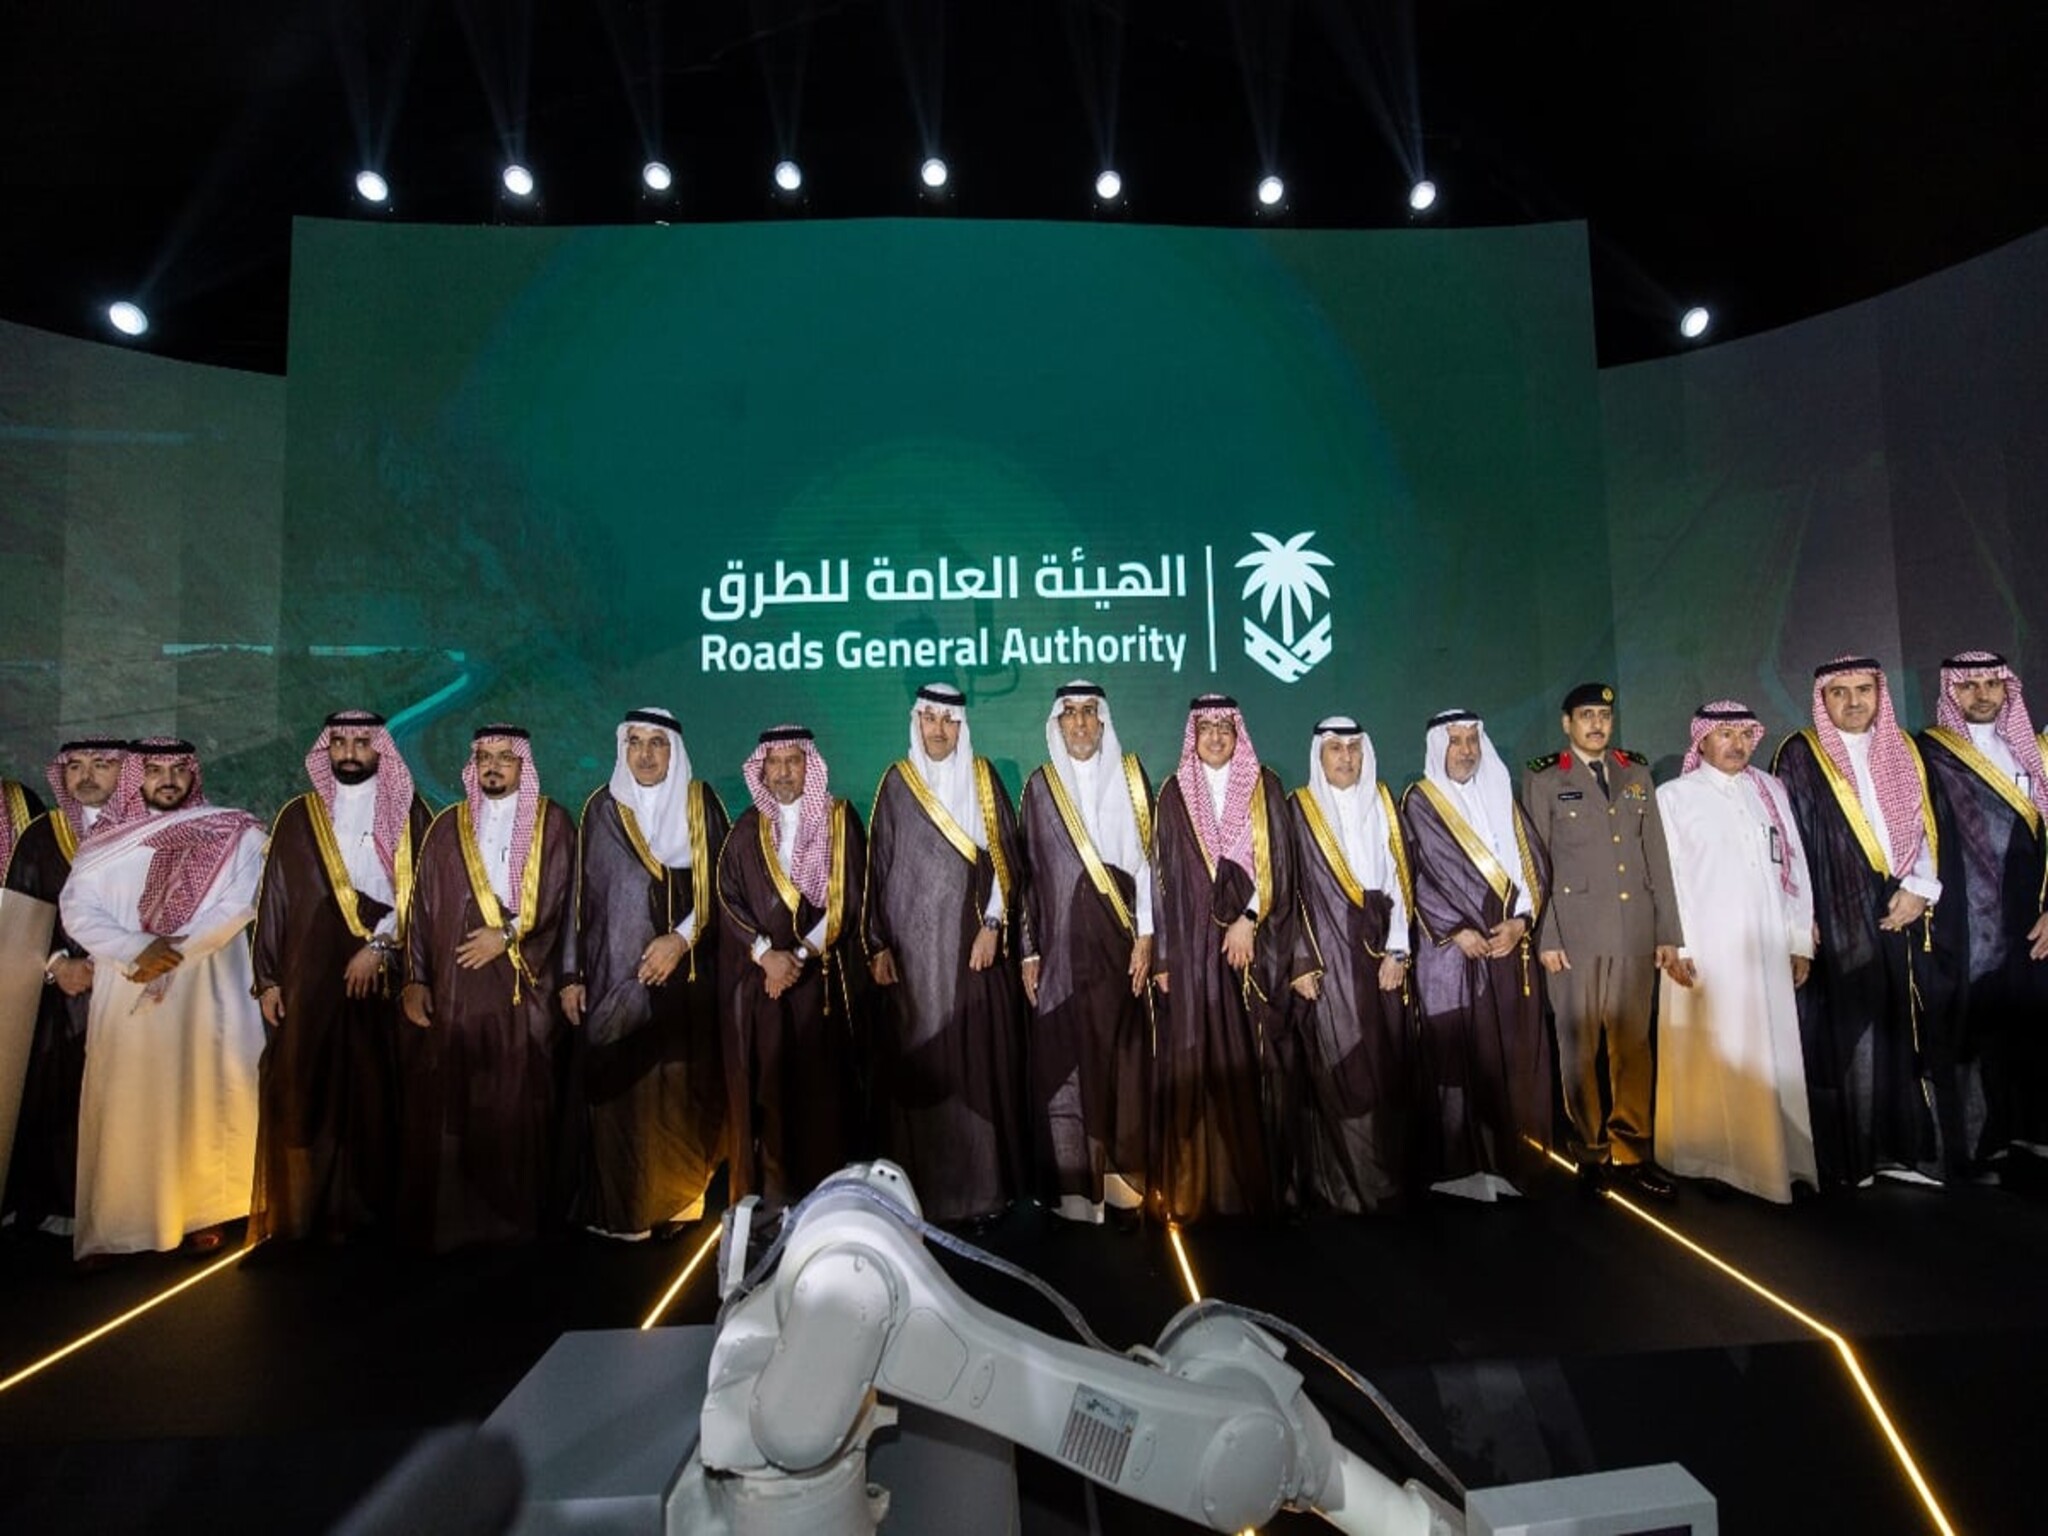 الهيئة العامة للطرق تطلق كود الطرق السعودي لتطوير المنظومة داخل المملكة